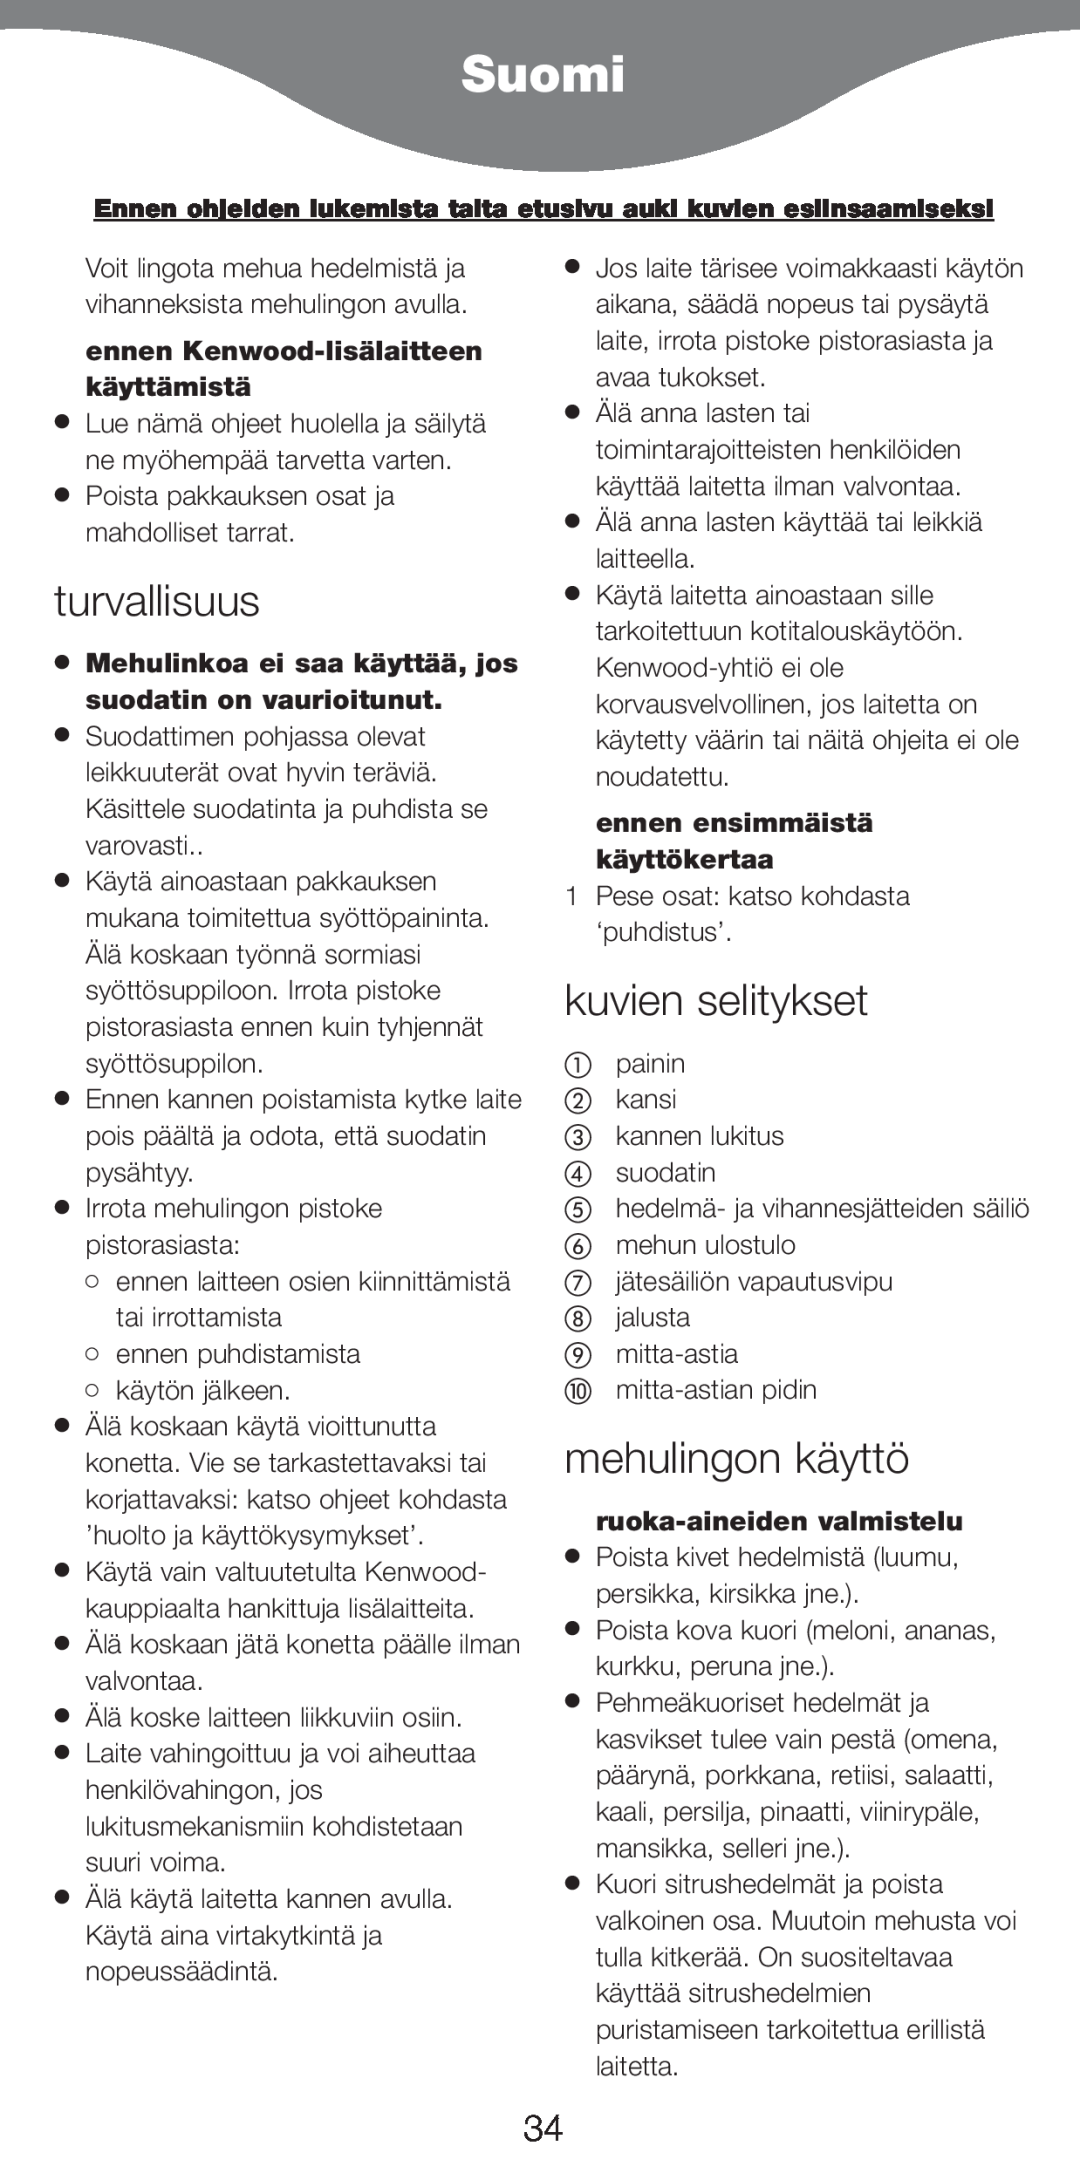 Kenwood AT265 manual Suomi, turvallisuus, kuvien selitykset, mehulingon käyttö, ennen Kenwood-lisälaitteenkäyttämistä 